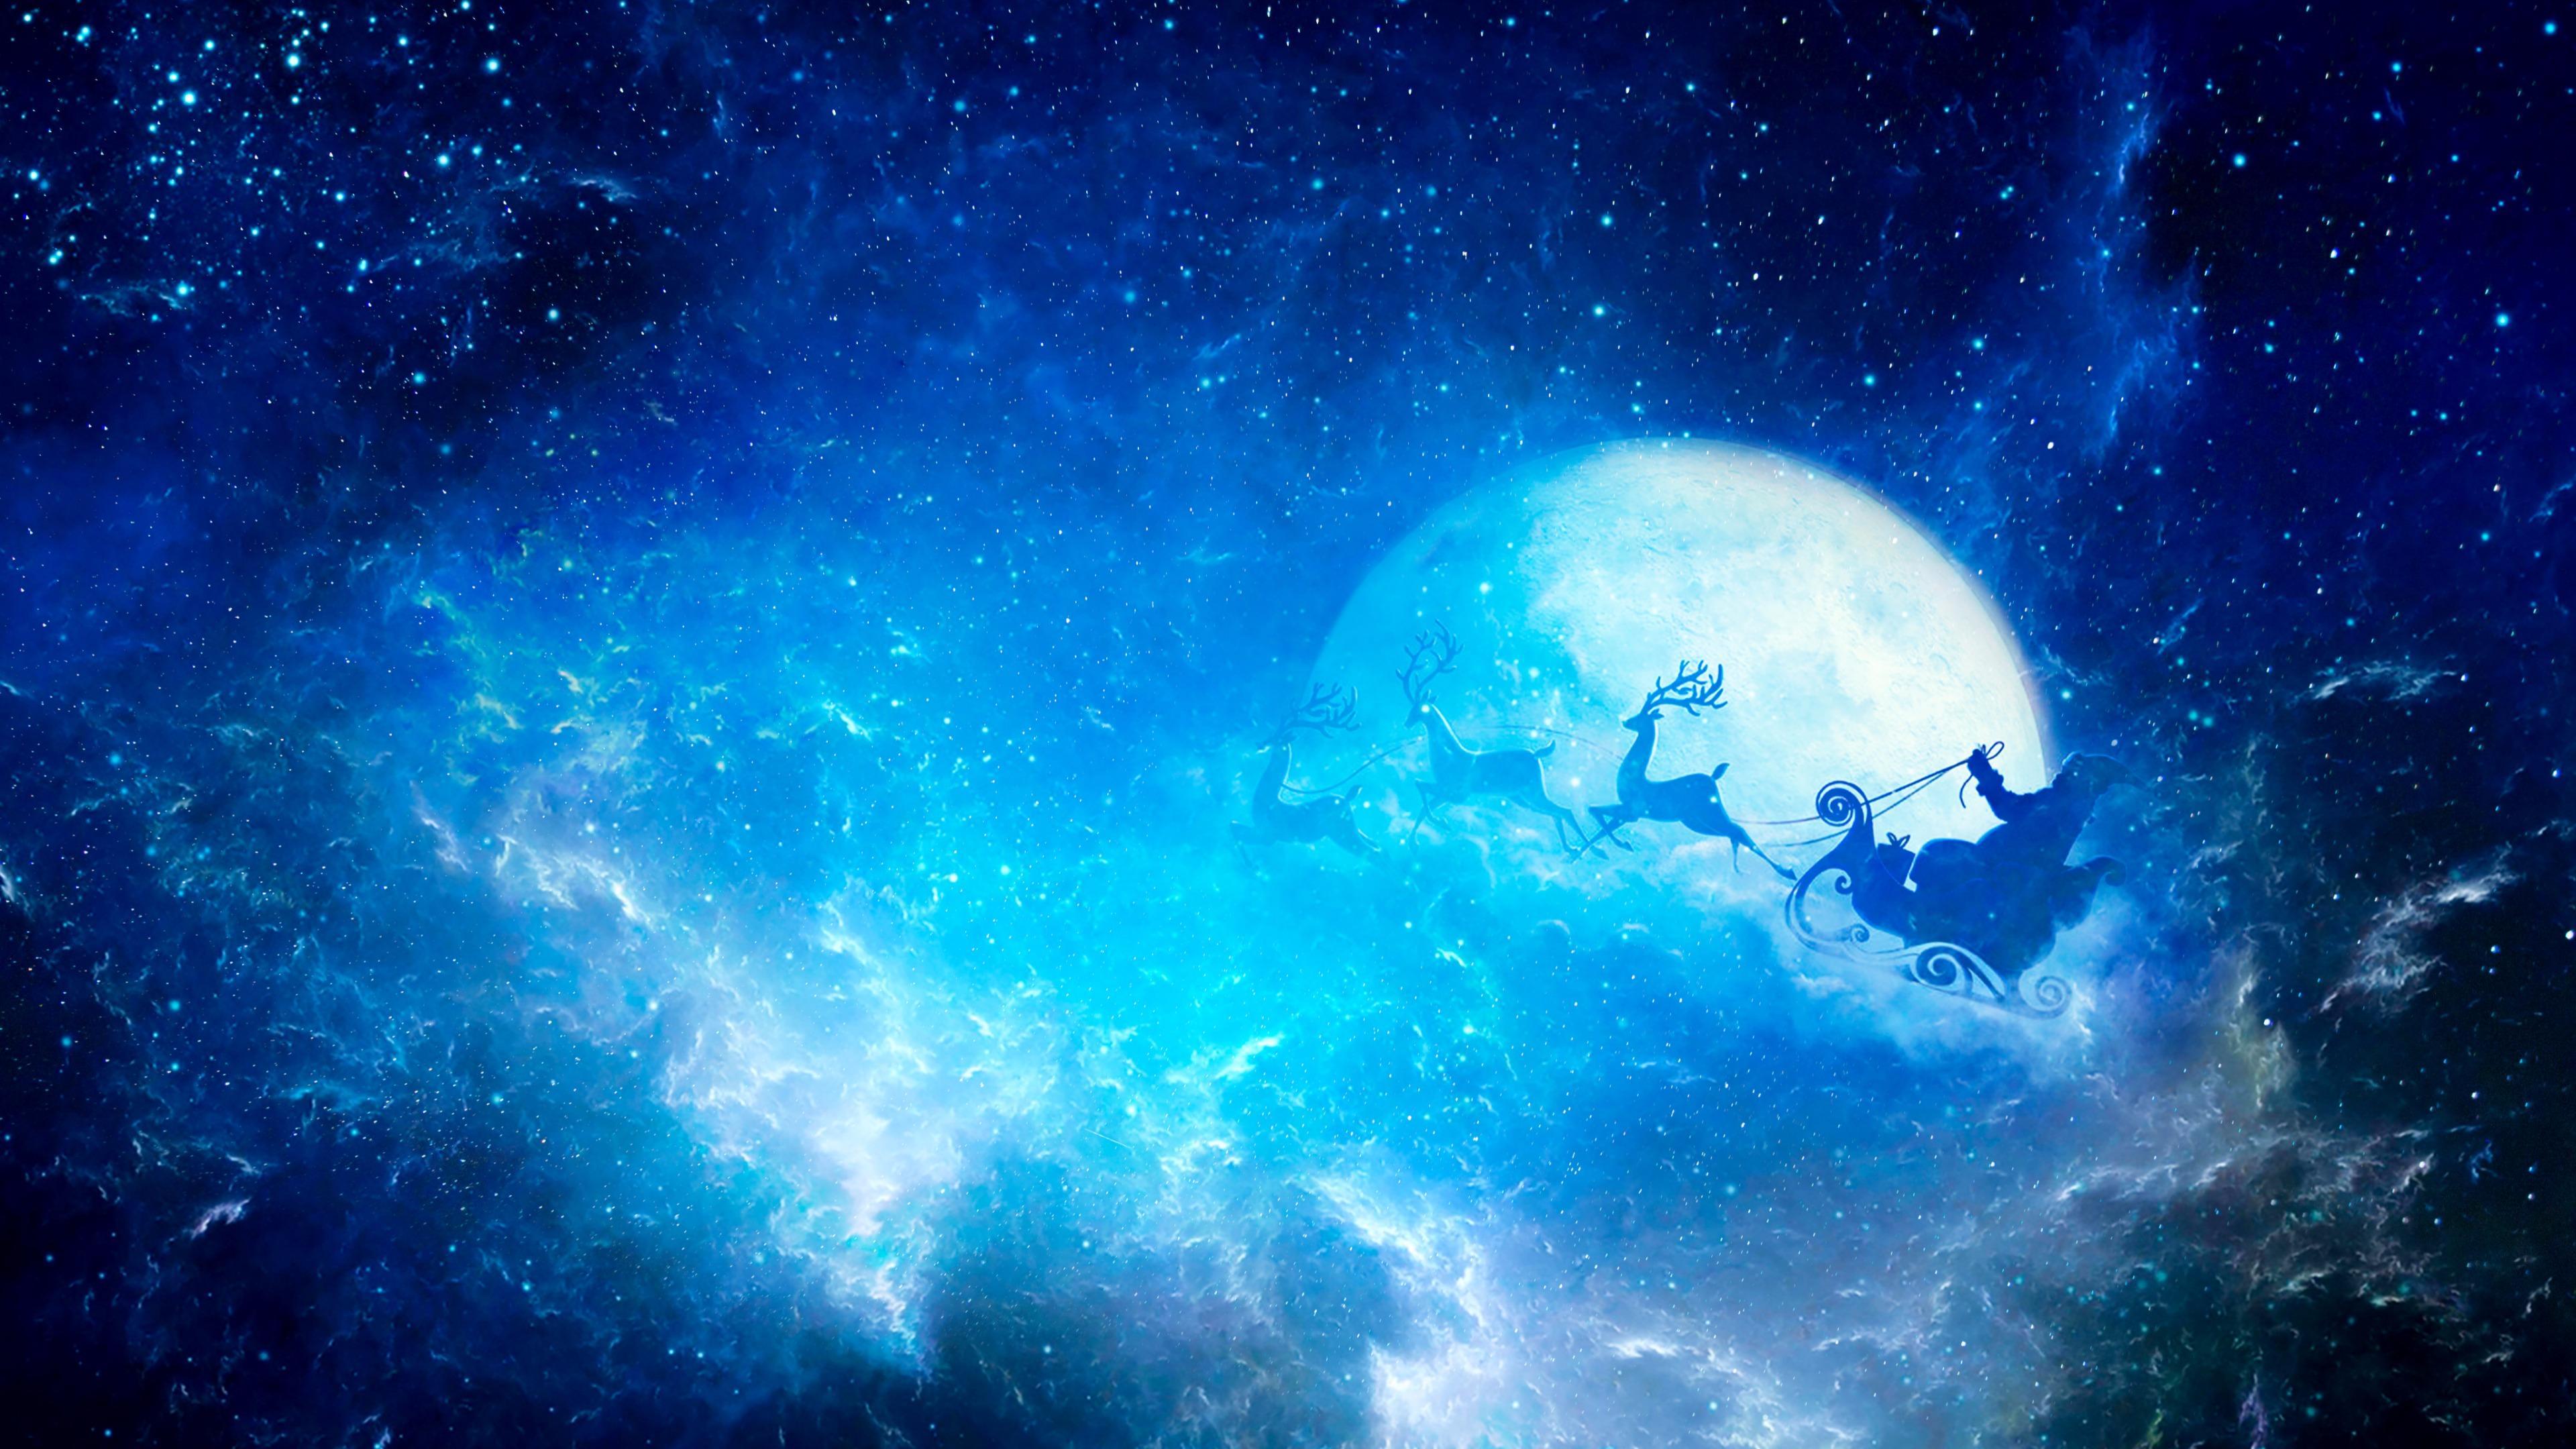 Santa Claus In The Night Sky Wallpaper. Wallpaper Studio 10. Tens